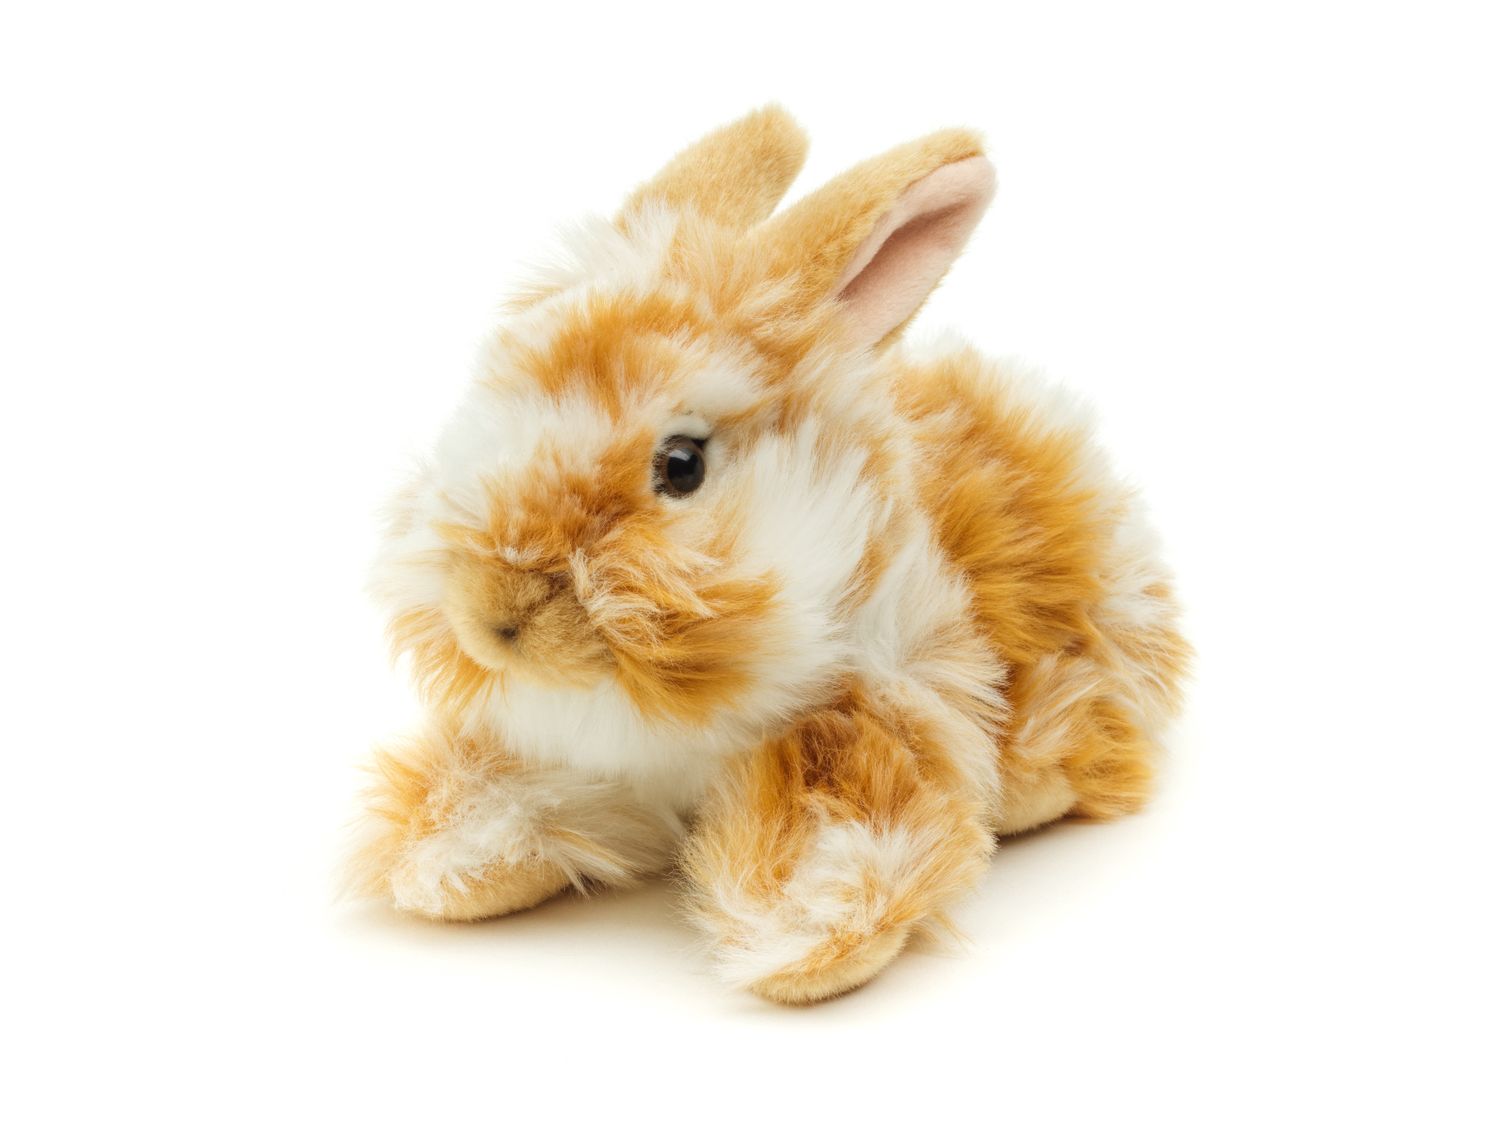 Löwenkopf-Kaninchen mit aufgestellten Ohren - liegend - Gold-weiß gescheckt - 23 cm (Höhe) - Plüsch-Hase - Plüschtier, Kuscheltier